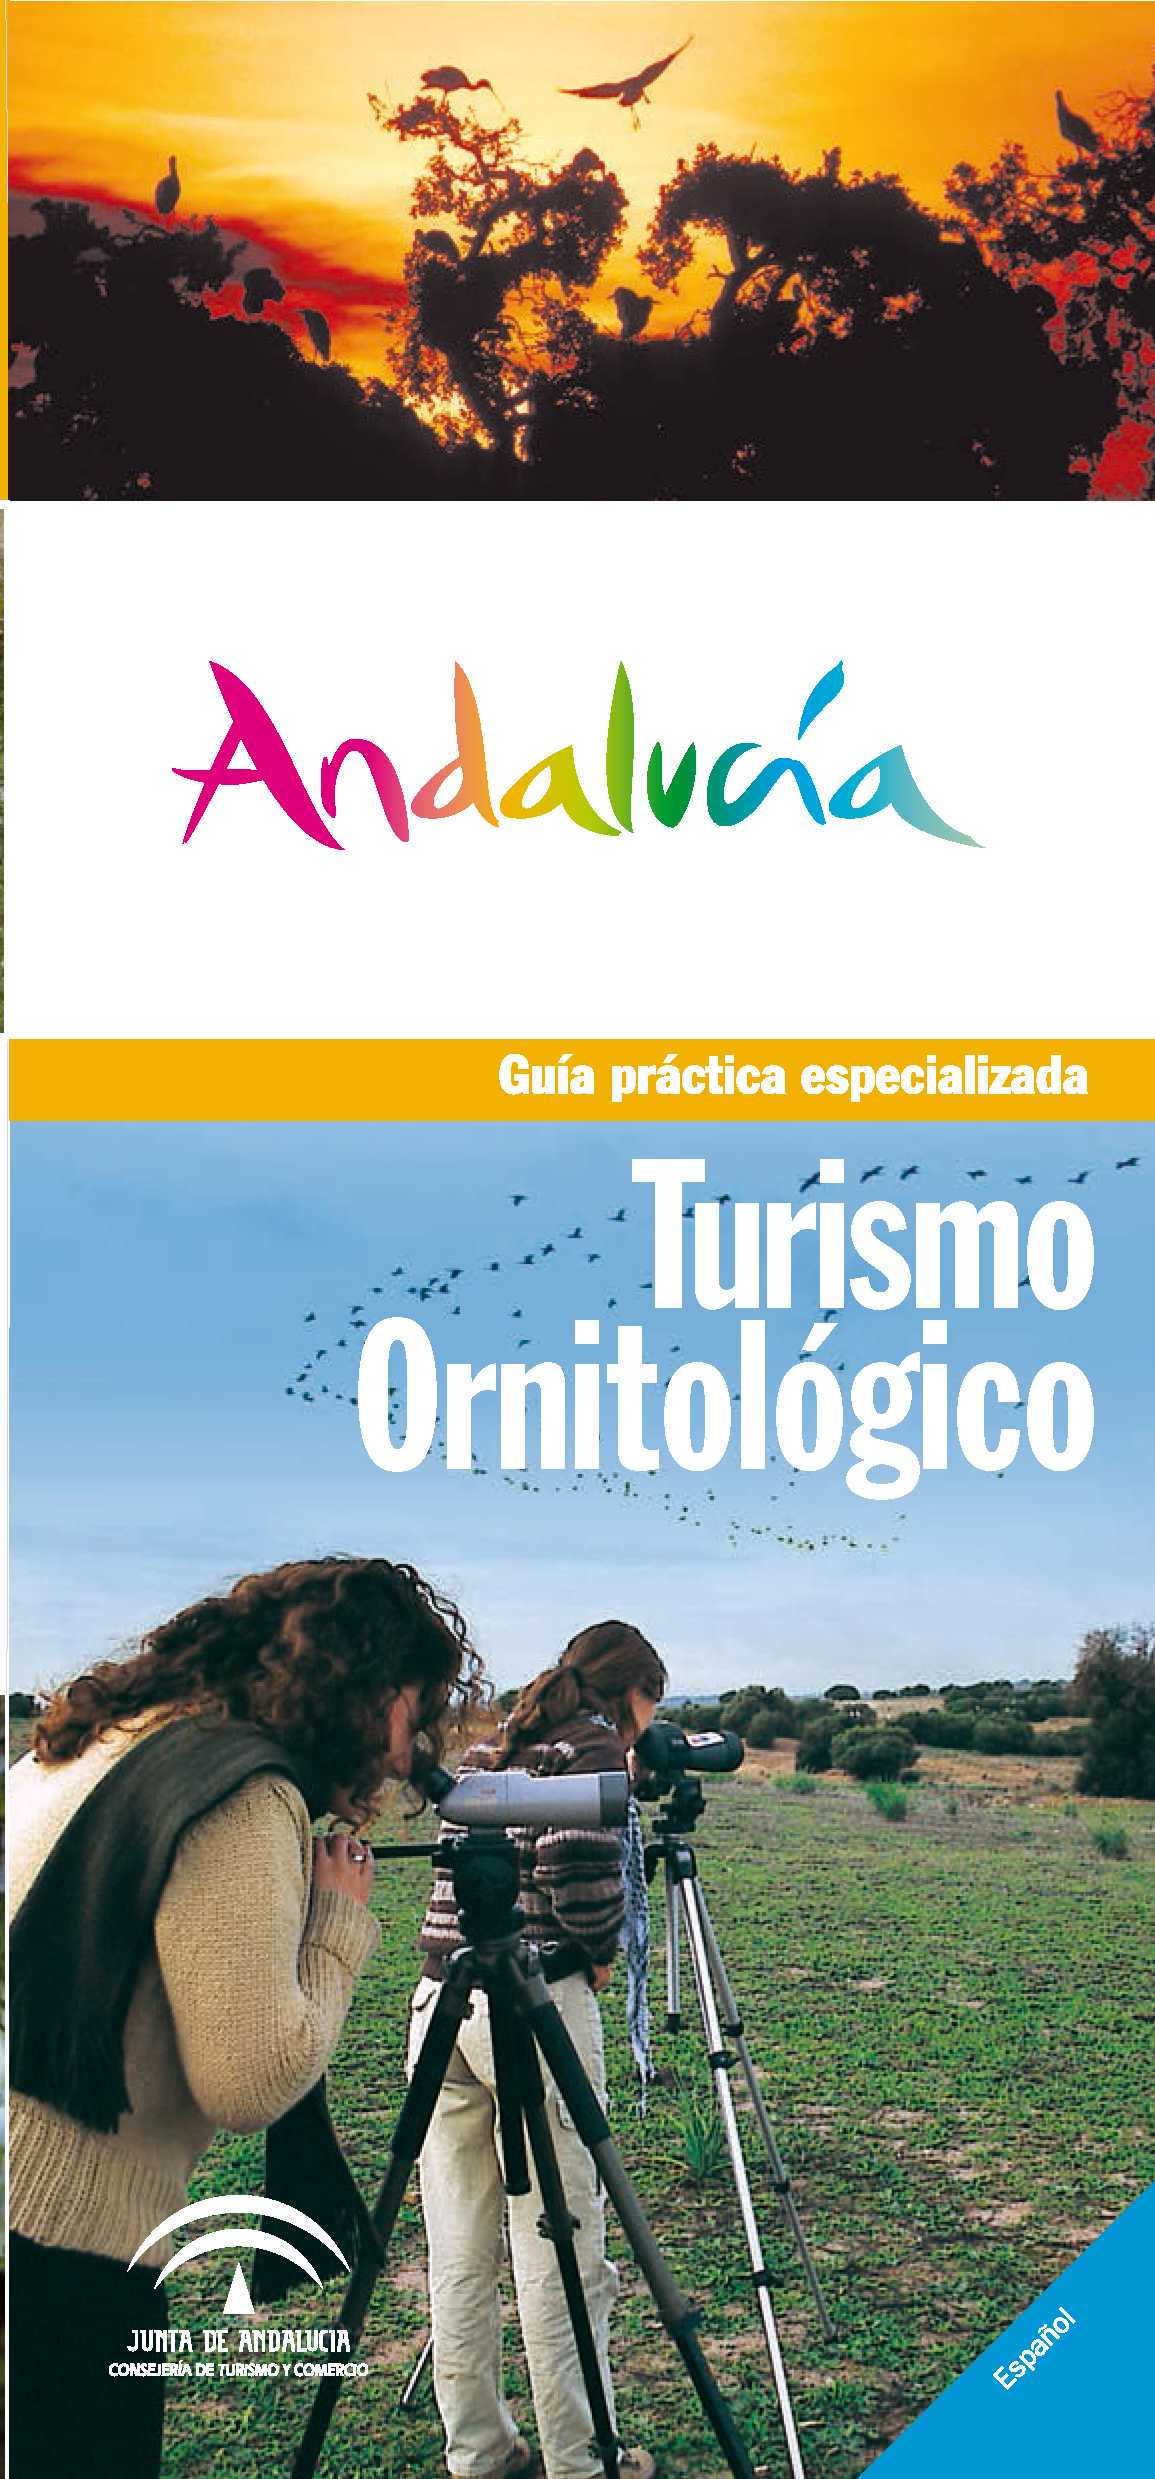 guia_practica_turismo_ornitologico.png 